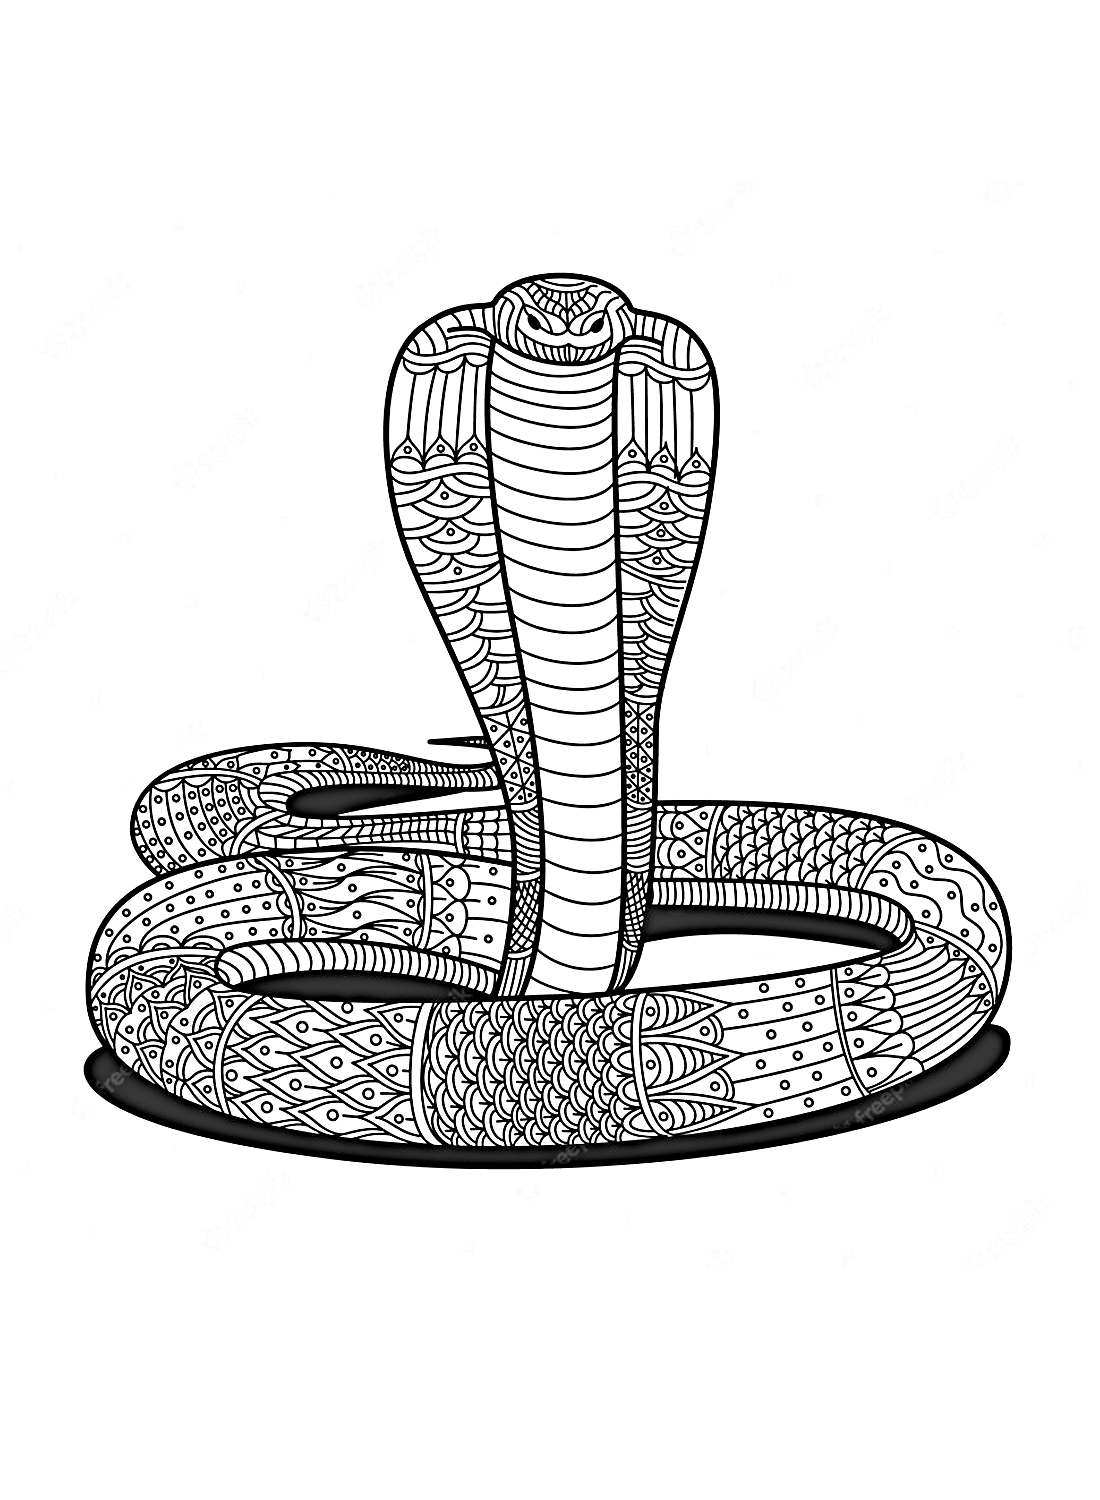 Cobra cobra de Cobra